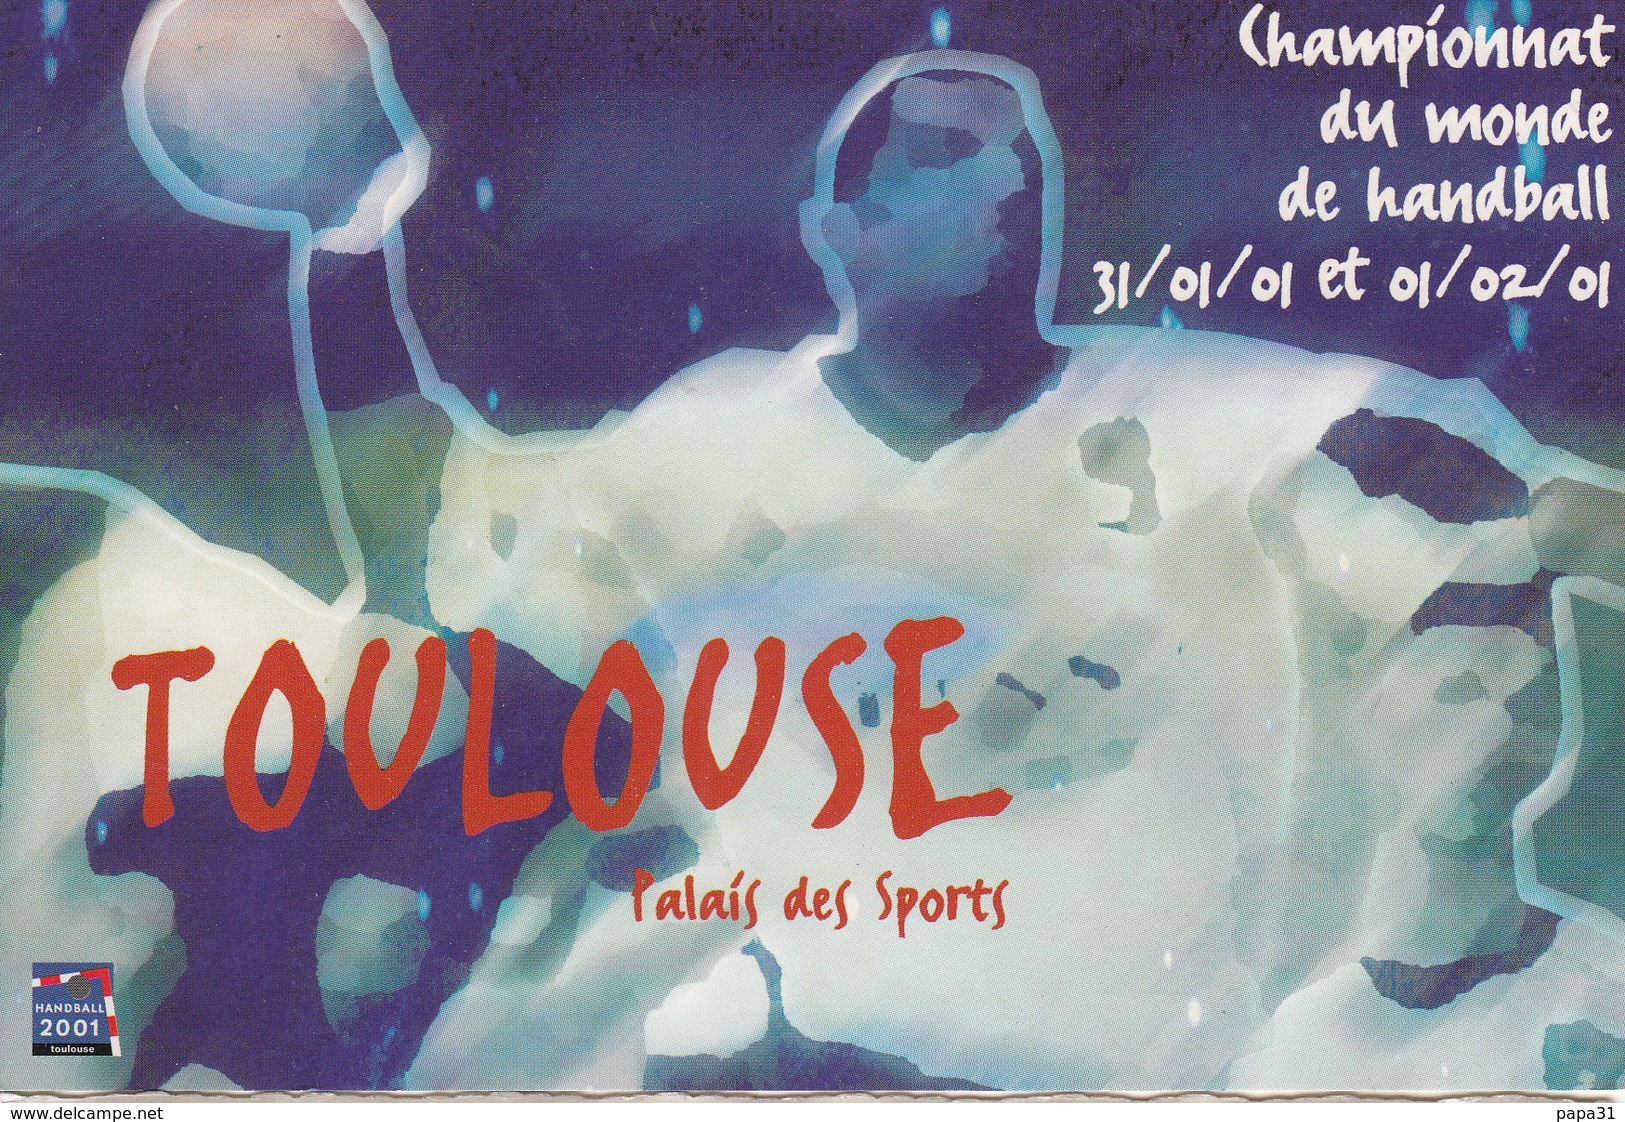 Championnat  Du Monde De Handball  31.01.01 Et 01.02.01 à TOULOUSE  Palais Des Sports - Handball